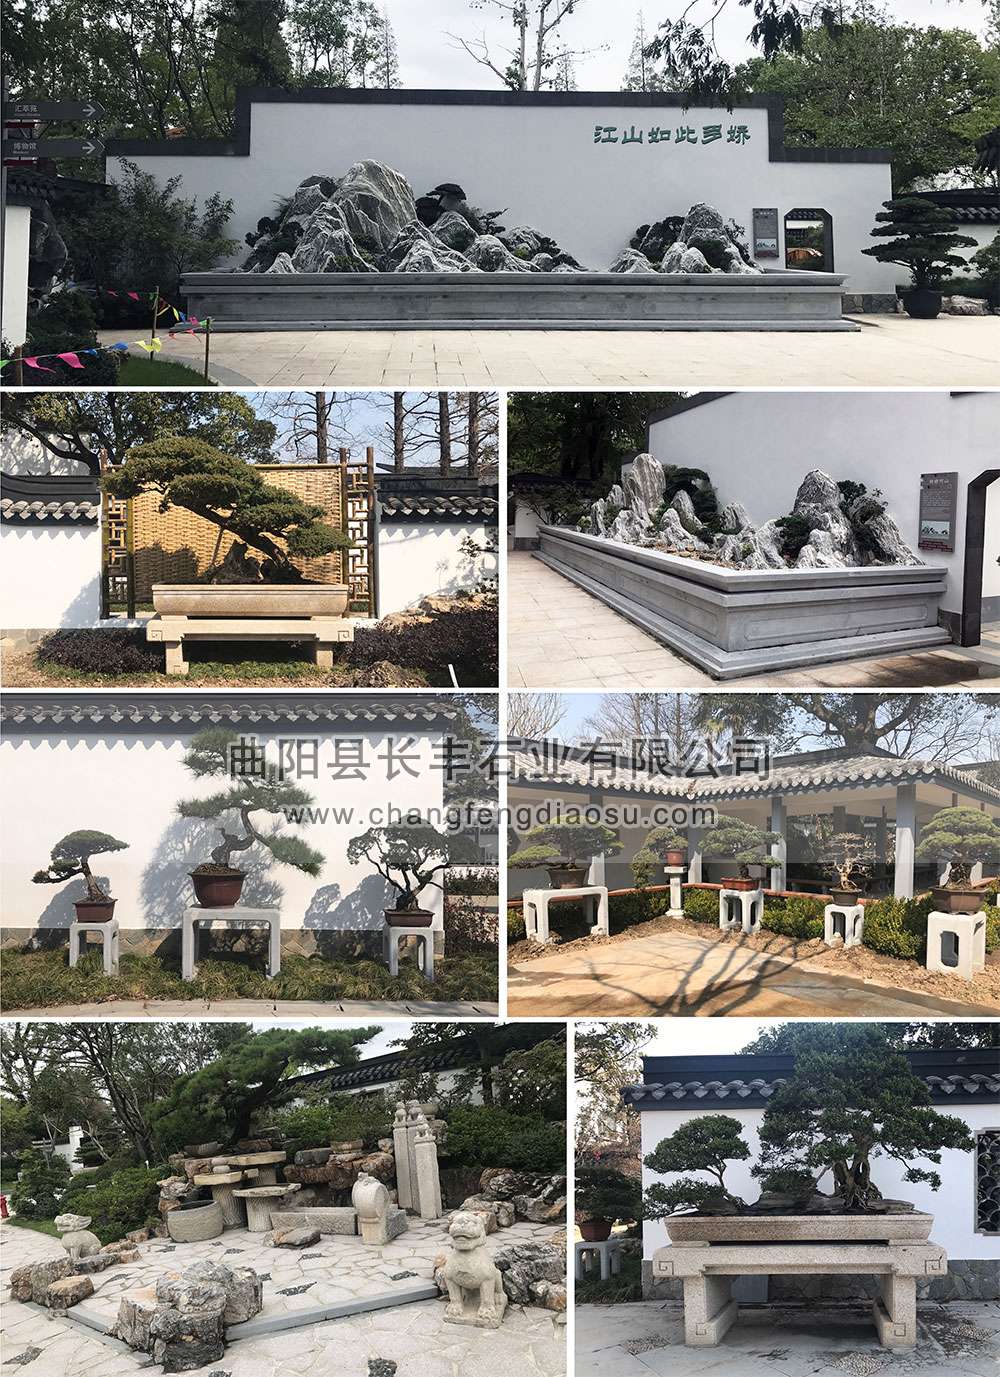 23-24-上海植物园（盆景园）石雕小品-2017-1001.jpg